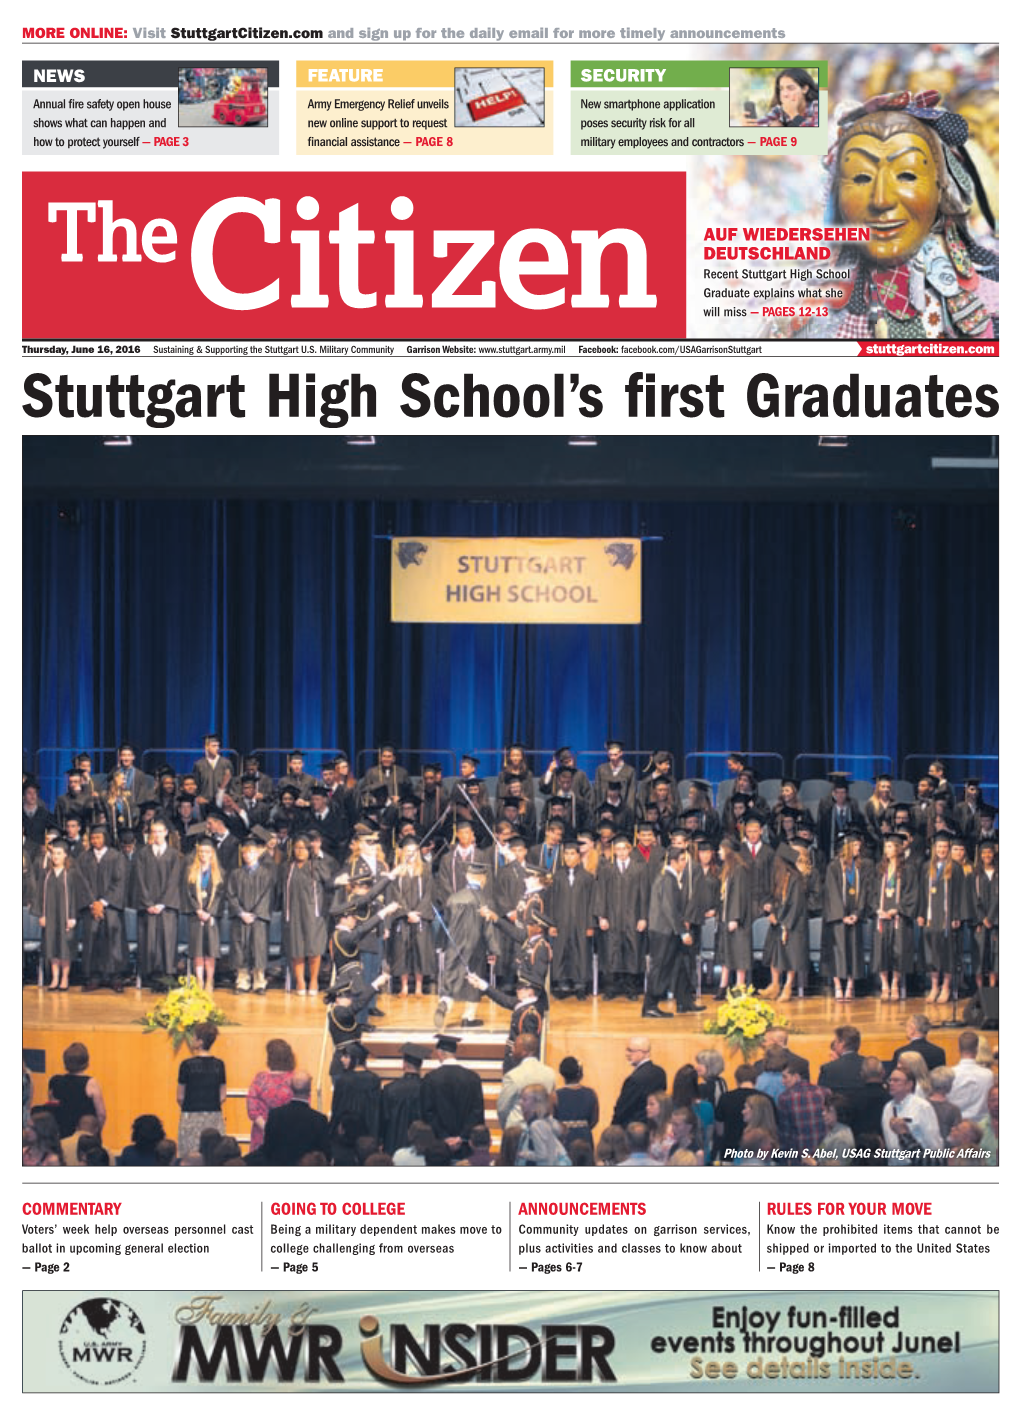 Stuttgart High School's First Graduates